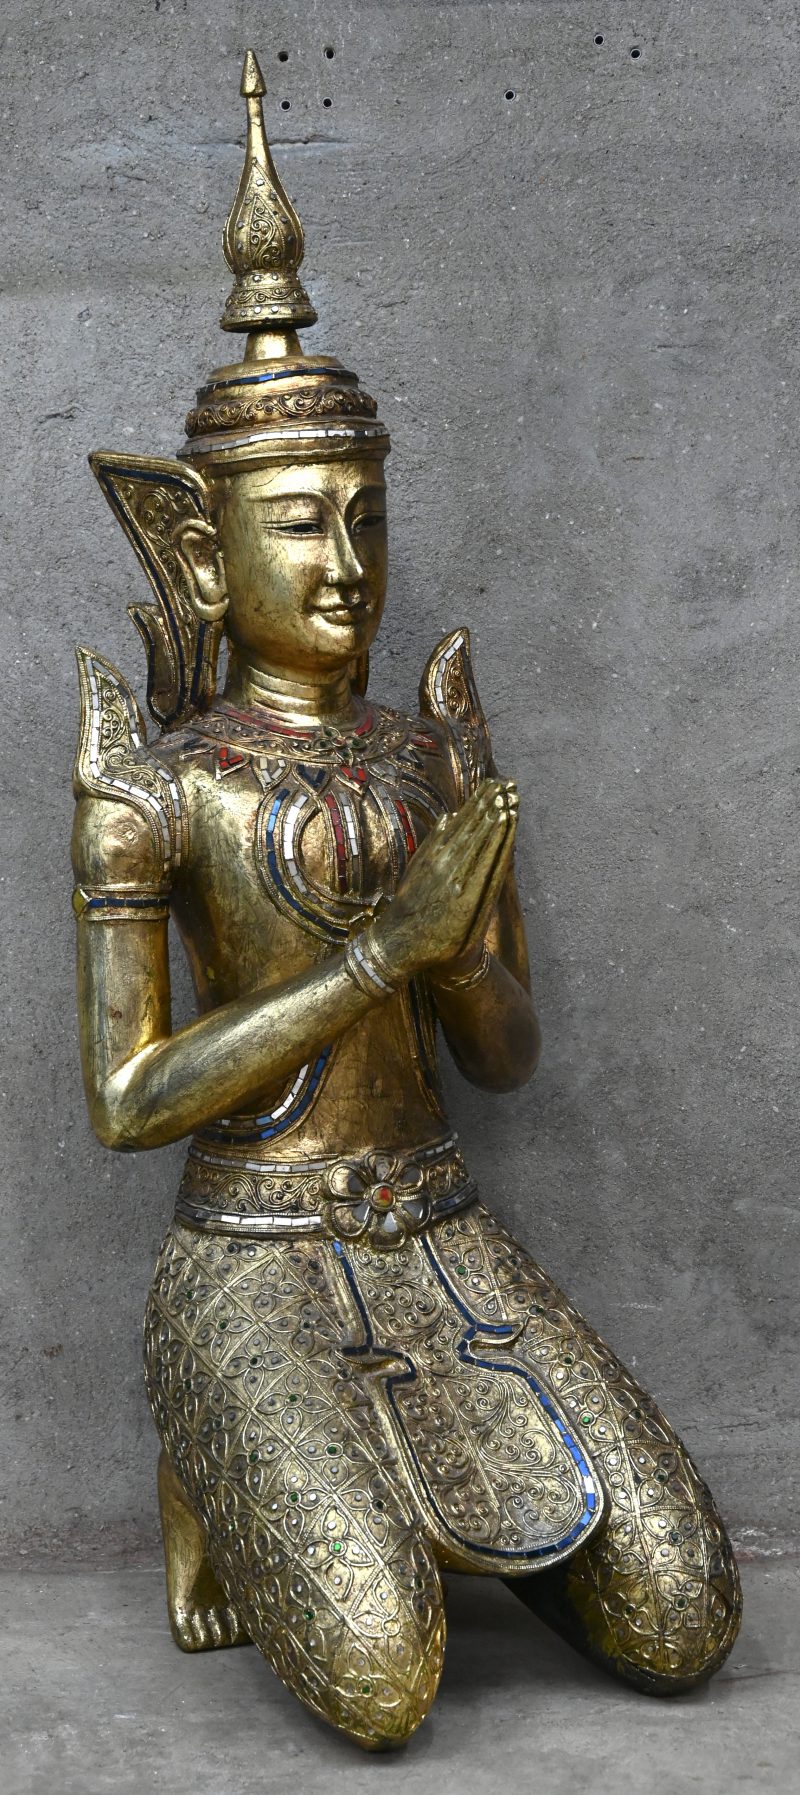 Een knielende Thaise Boeddha van verguld hout, versierd met gekleurd glazen elementen.